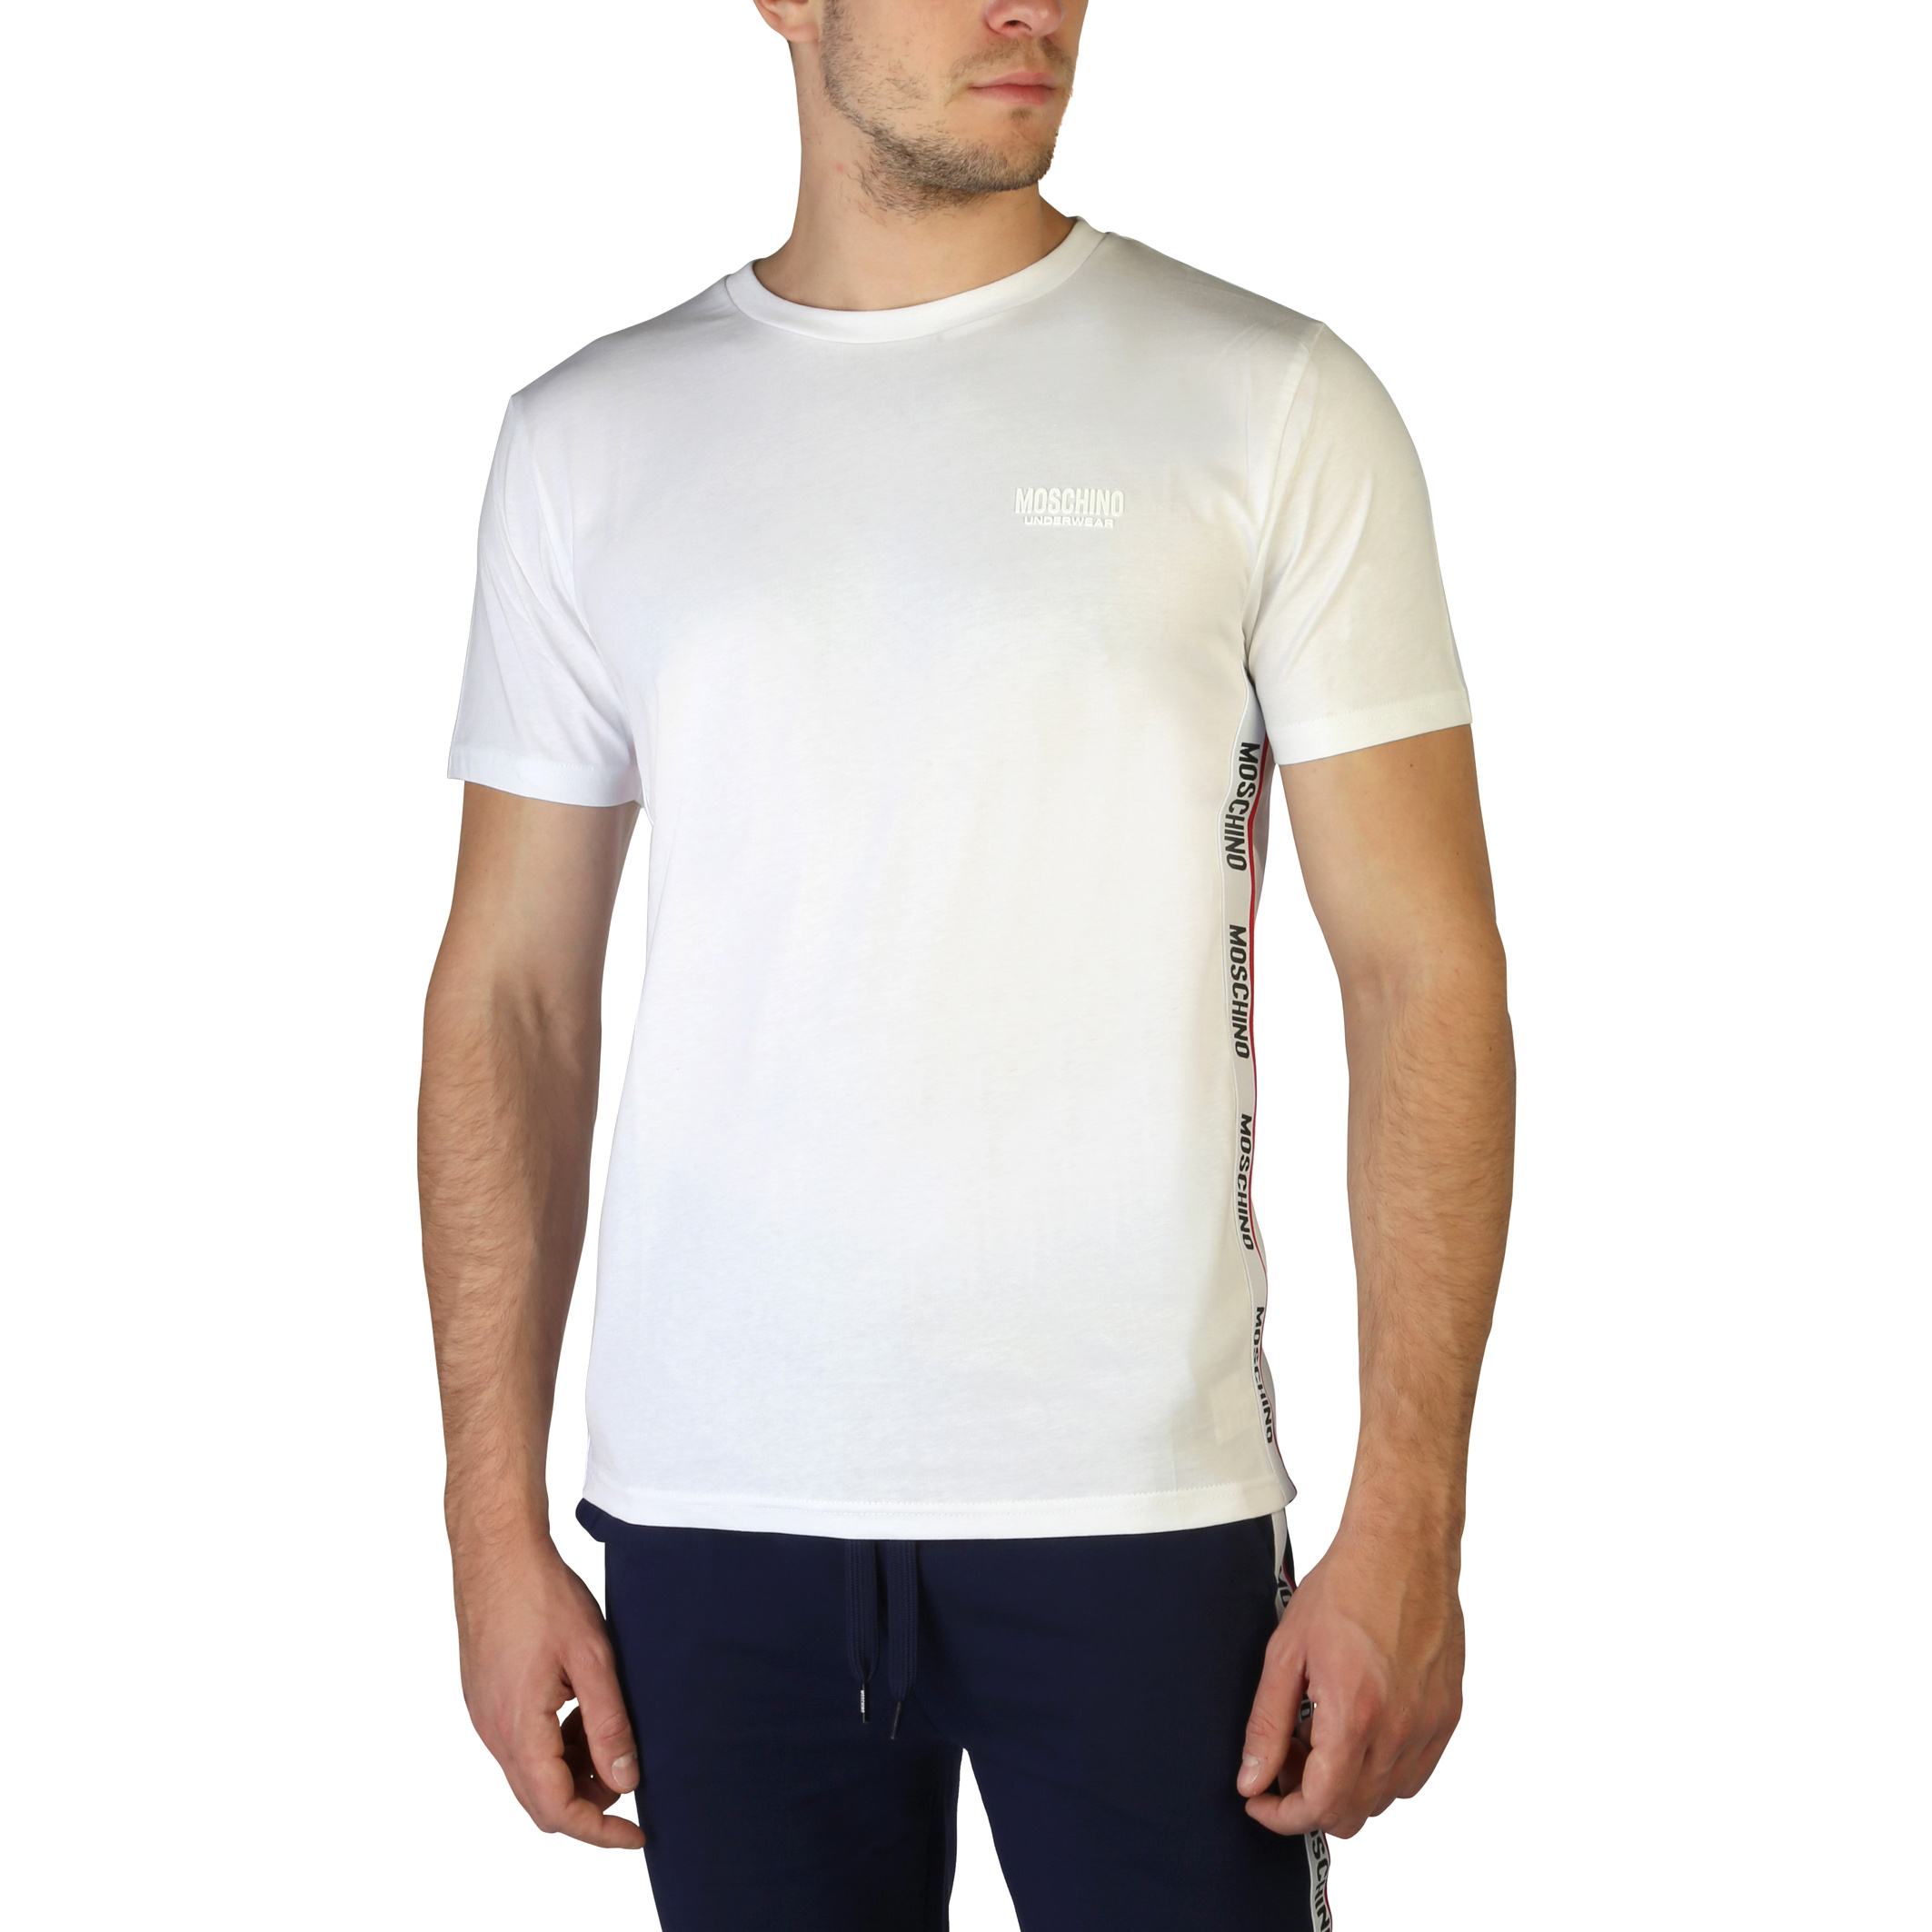 Moschino - T-shirt 1903-8101